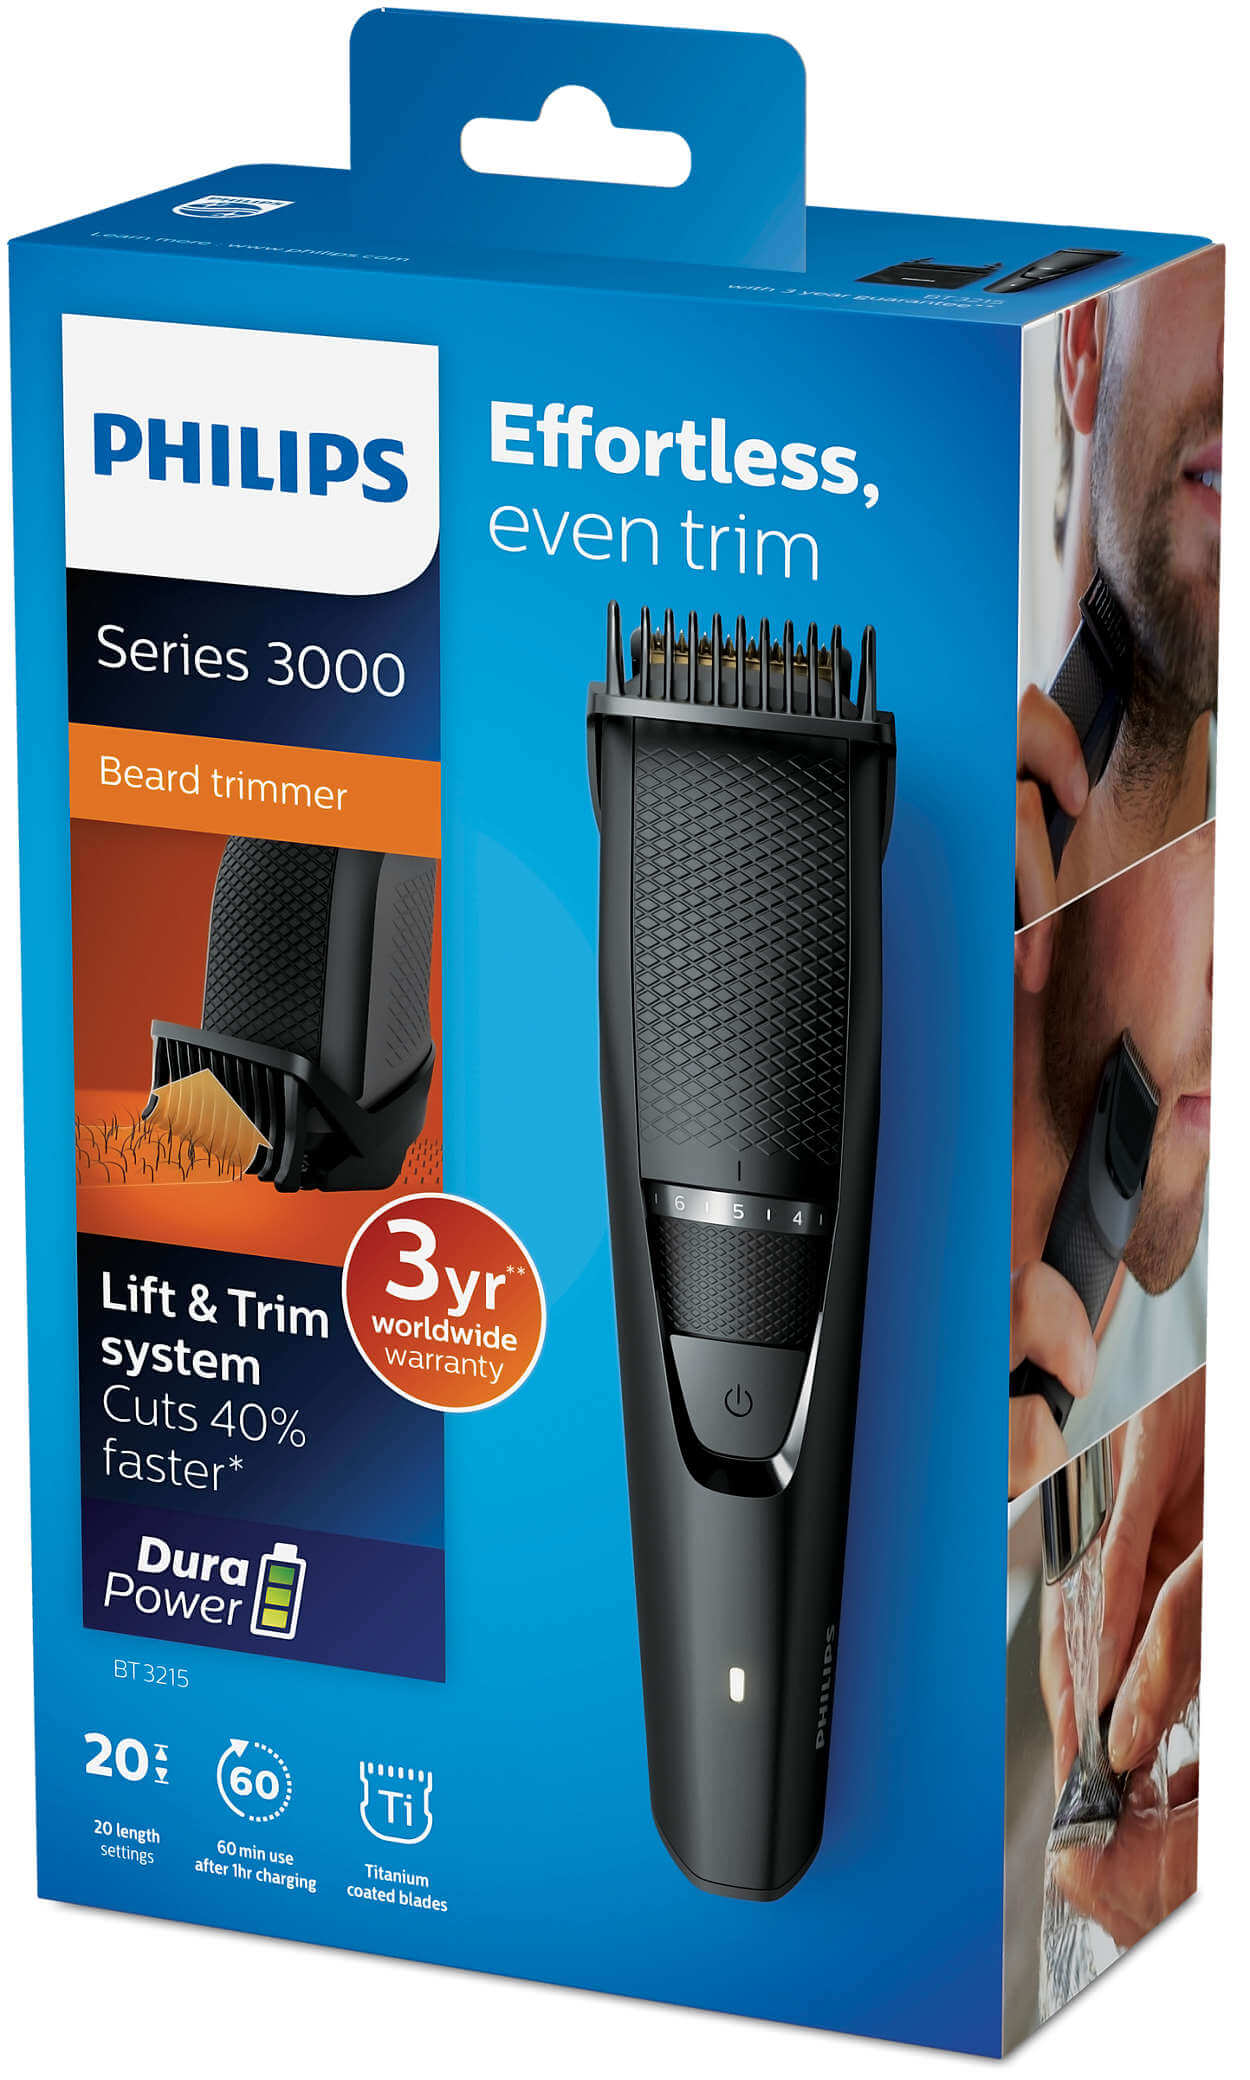 philips beard trimmer bt3215